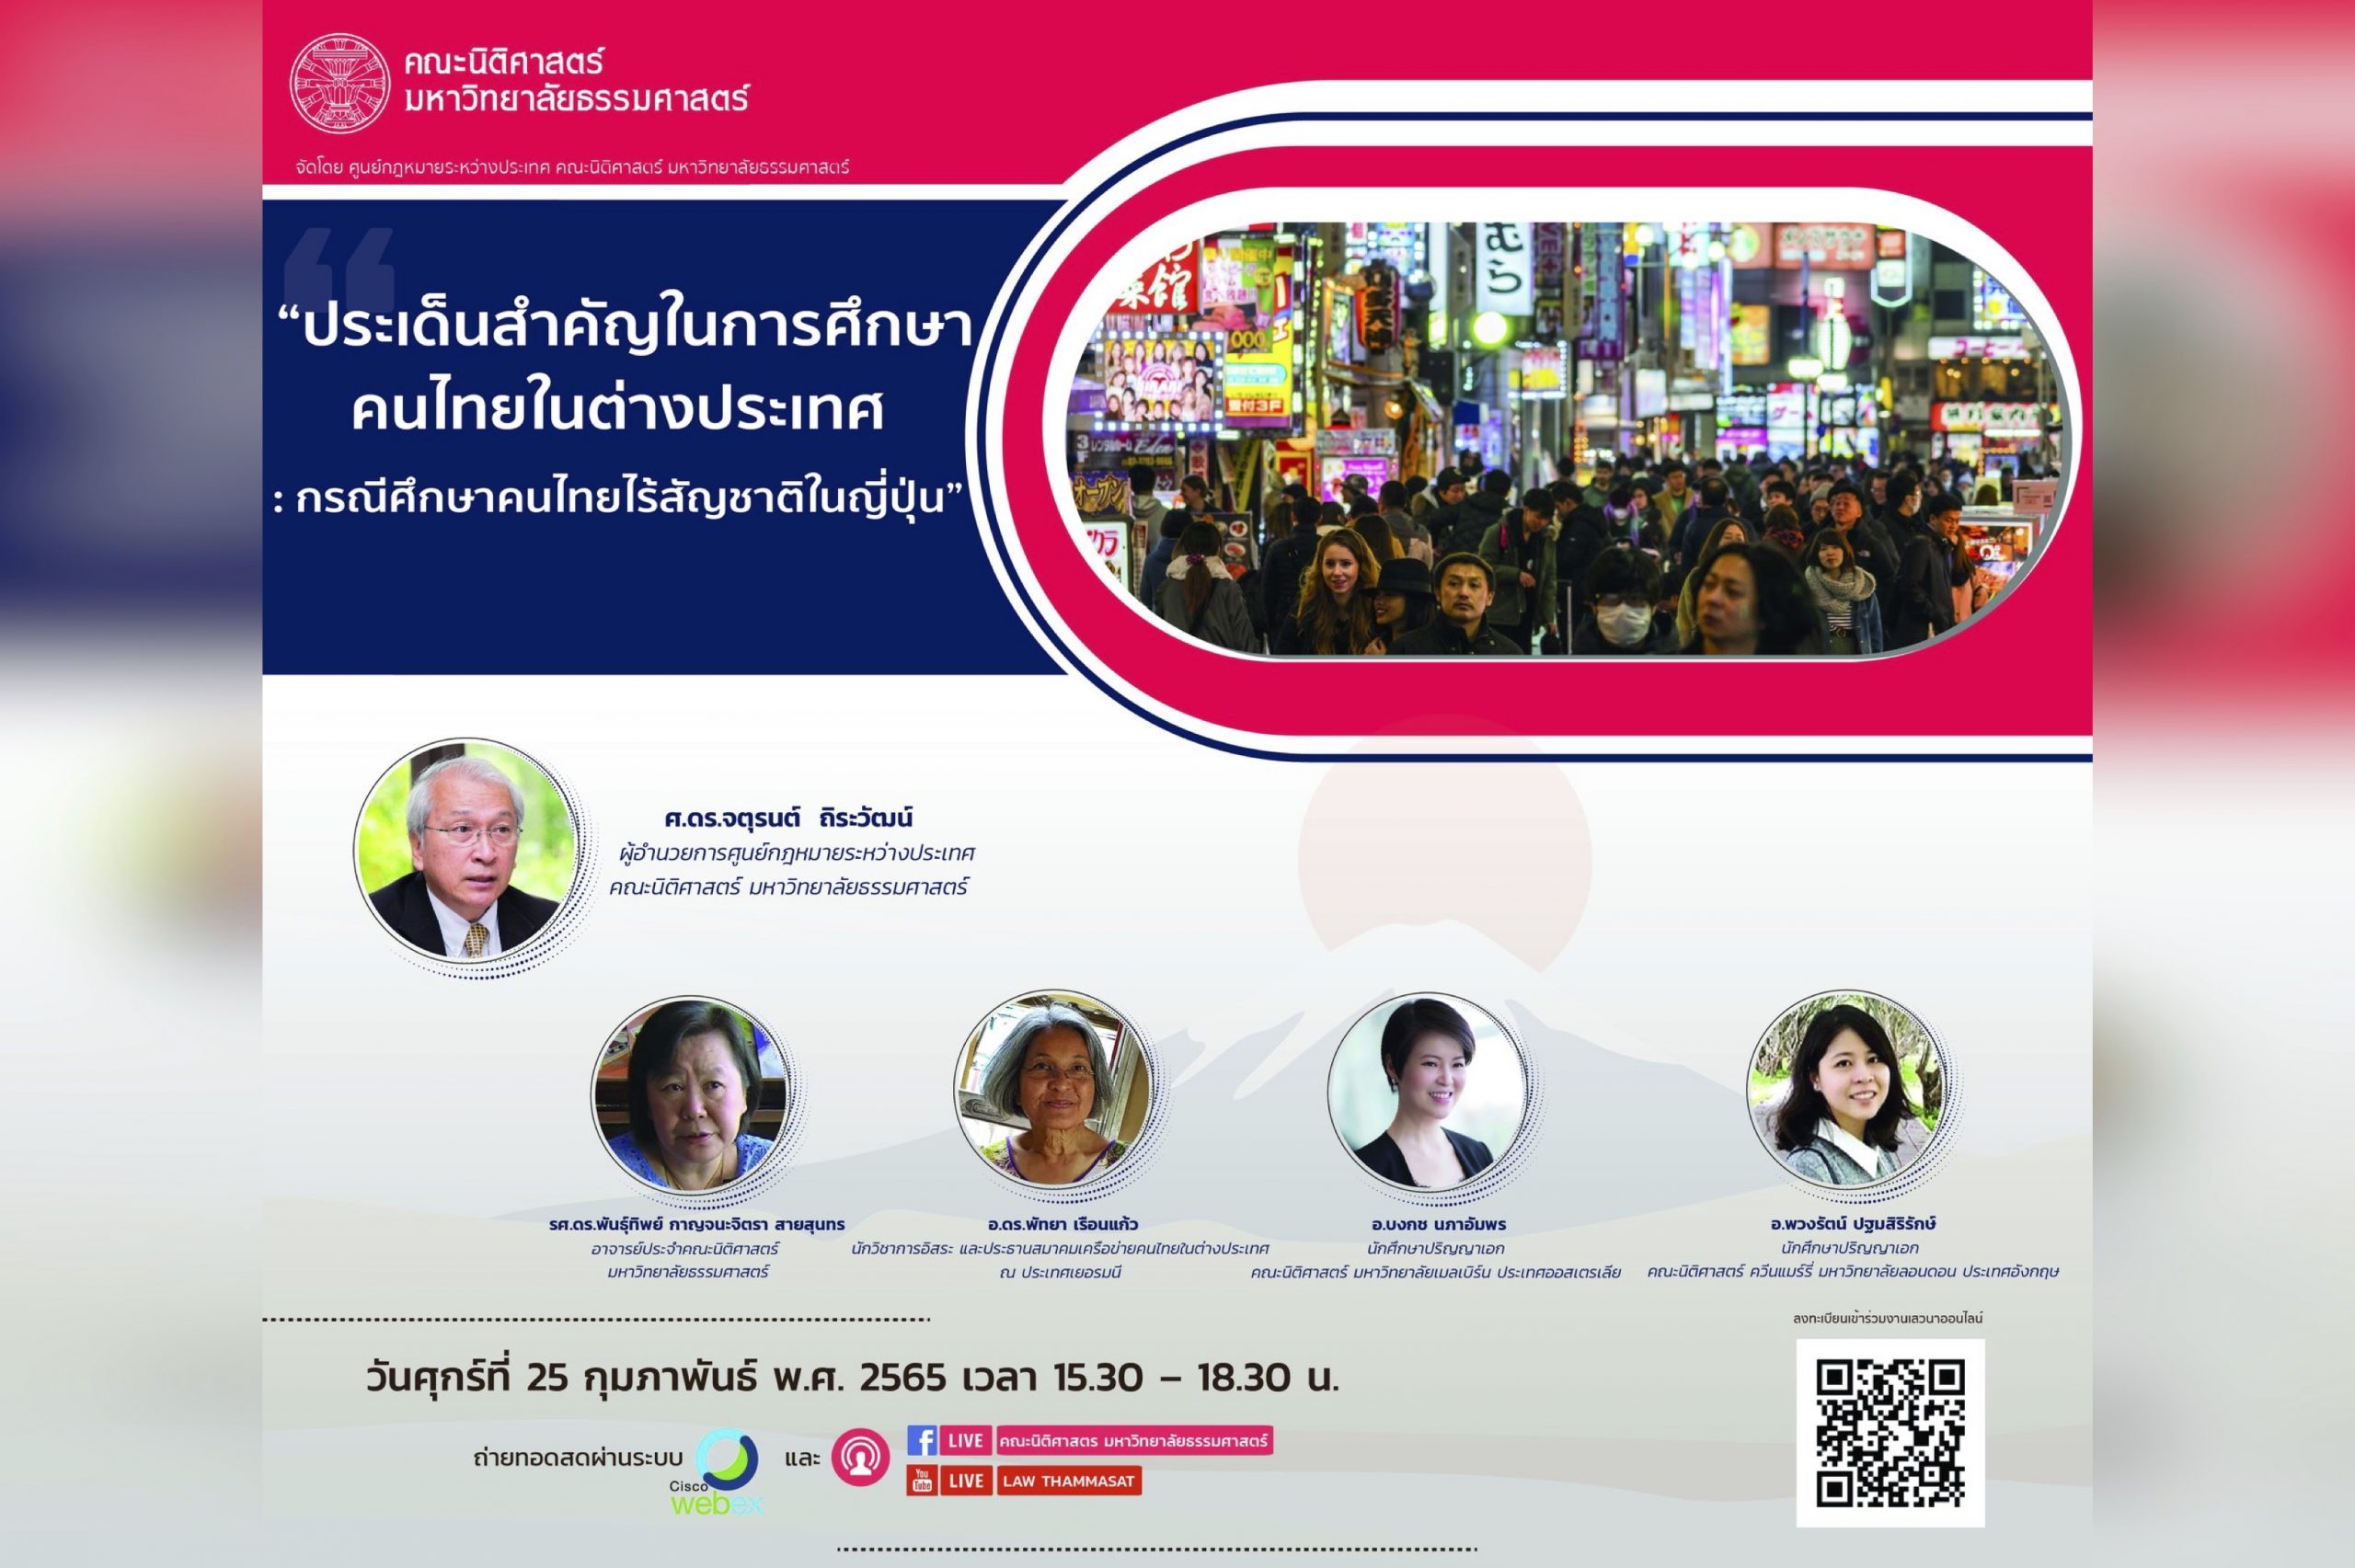 ขอเชิญร่วมงานเสวนาทางวิชาการเรื่อง “ประเด็นสำคัญในการศึกษาคนไทยในต่างประเทศ : กรณีศึกษาคนไทยไร้สัญชาติในญี่ปุ่น”